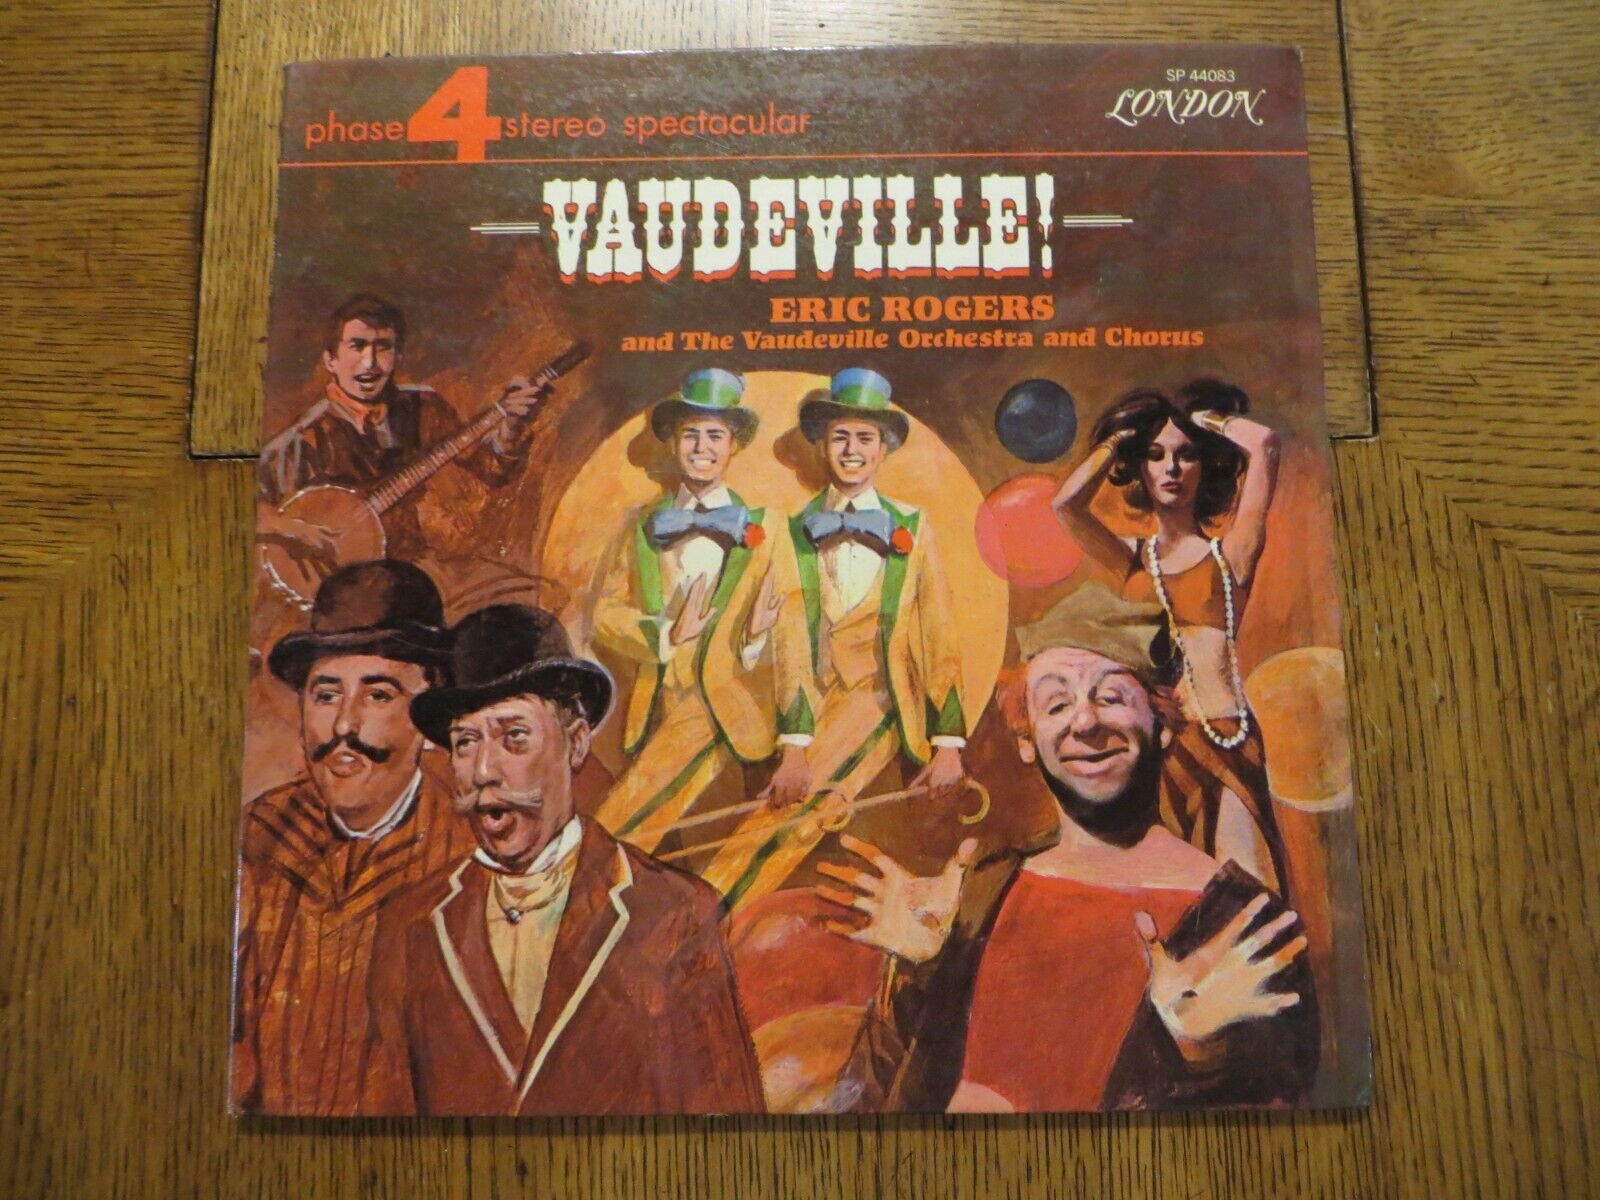 Eric Rogers & The Vaudeville Orchestra & Chorus – Vaudeville - LP VG/VG+